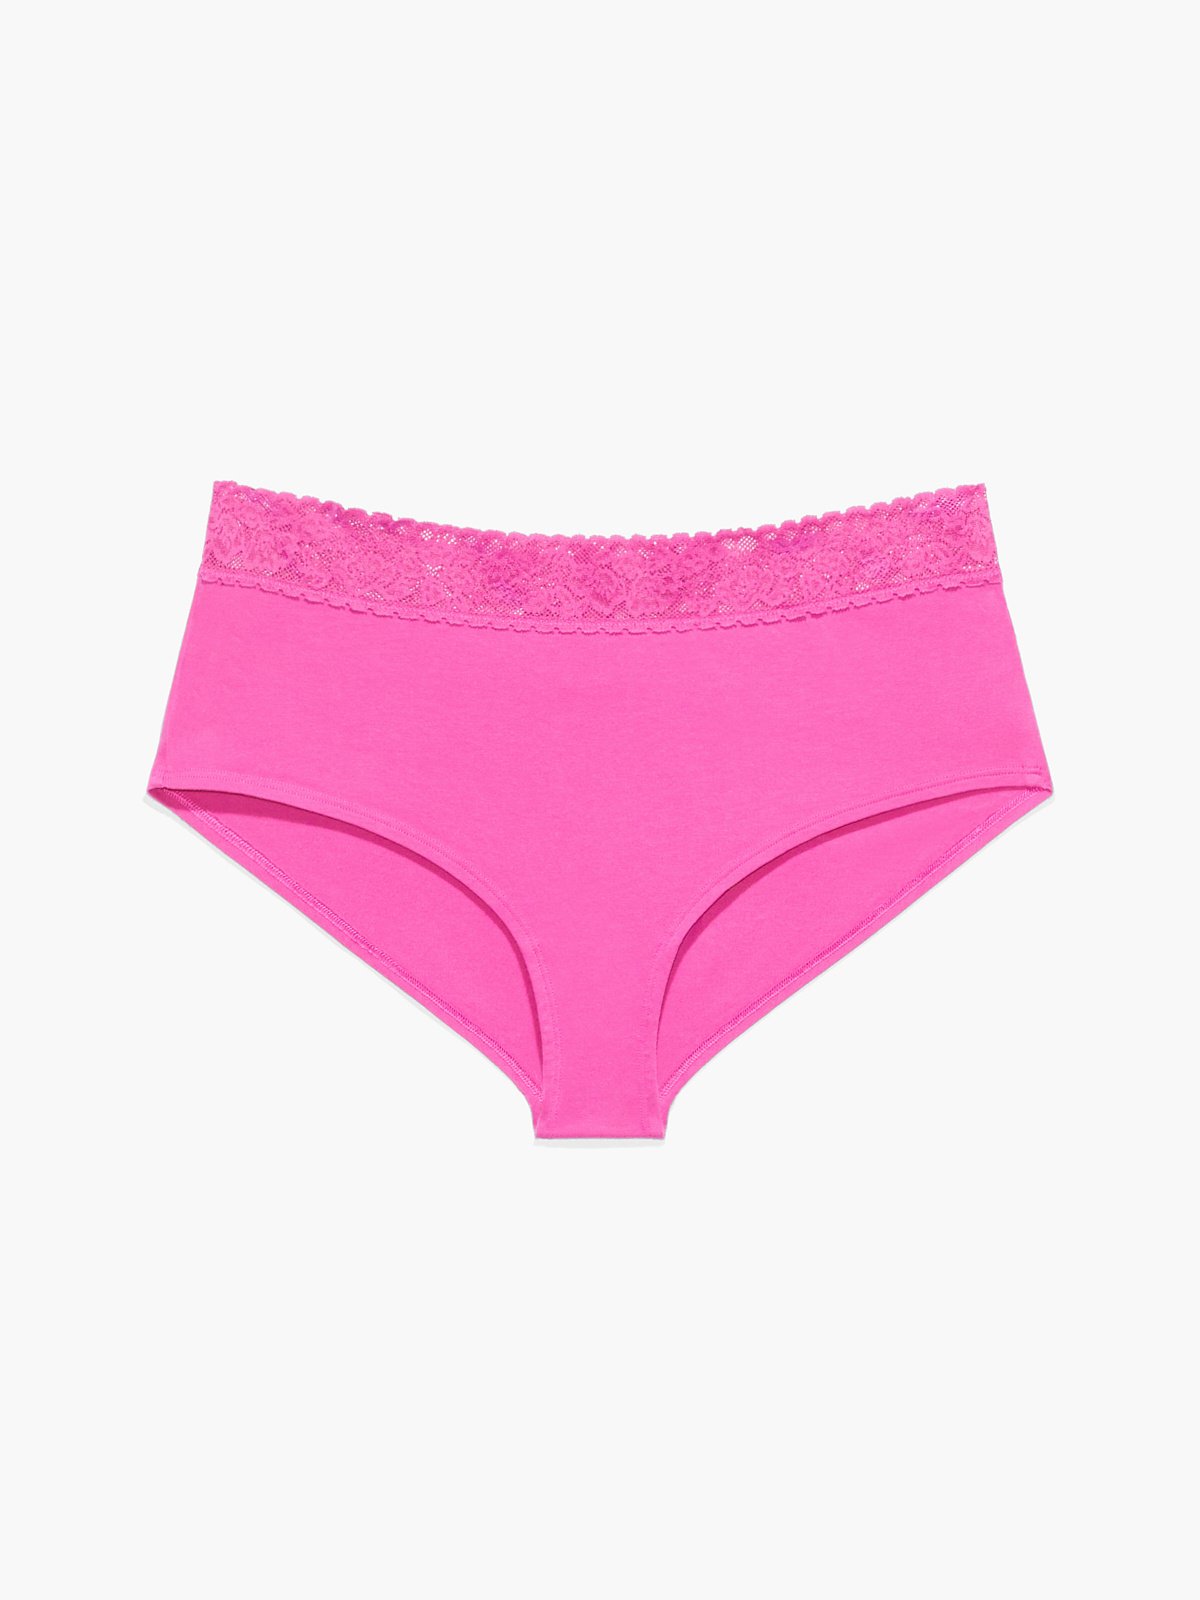 Lace Trim Boyshort Panty - PINK - Victoria's Secret